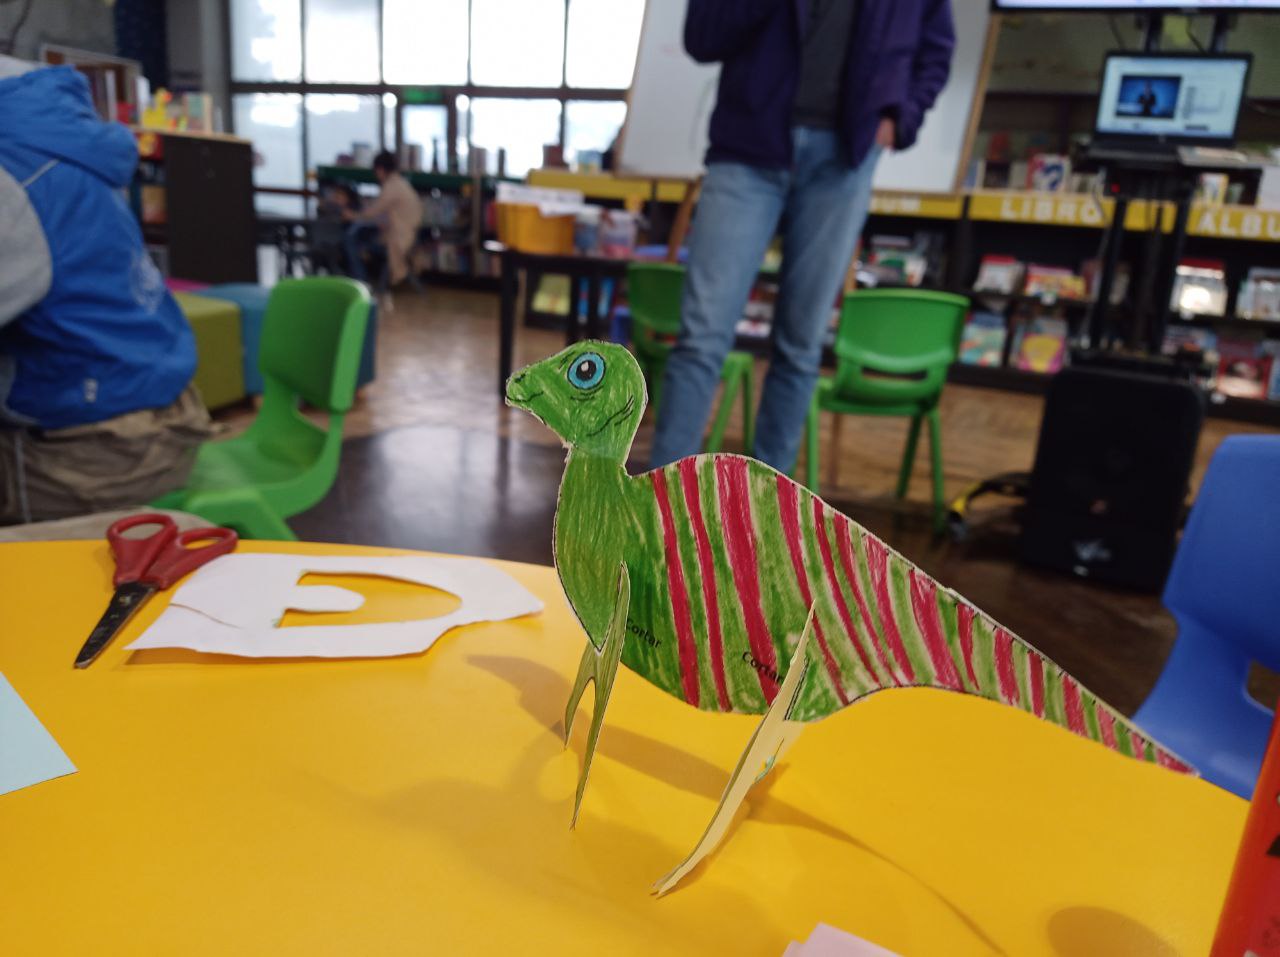 Este es un dinosaurio de papel hecho a mano en un aula. El dinosaurio, coloreado en tonos verdes y rojos, se encuentra sobre una mesa amarilla. Junto a él, hay unas tijeras rojas y negras, así como recortes de papel blanco. En el fondo, se ven sillas verdes y azules, estanterías con libros y una persona parada.